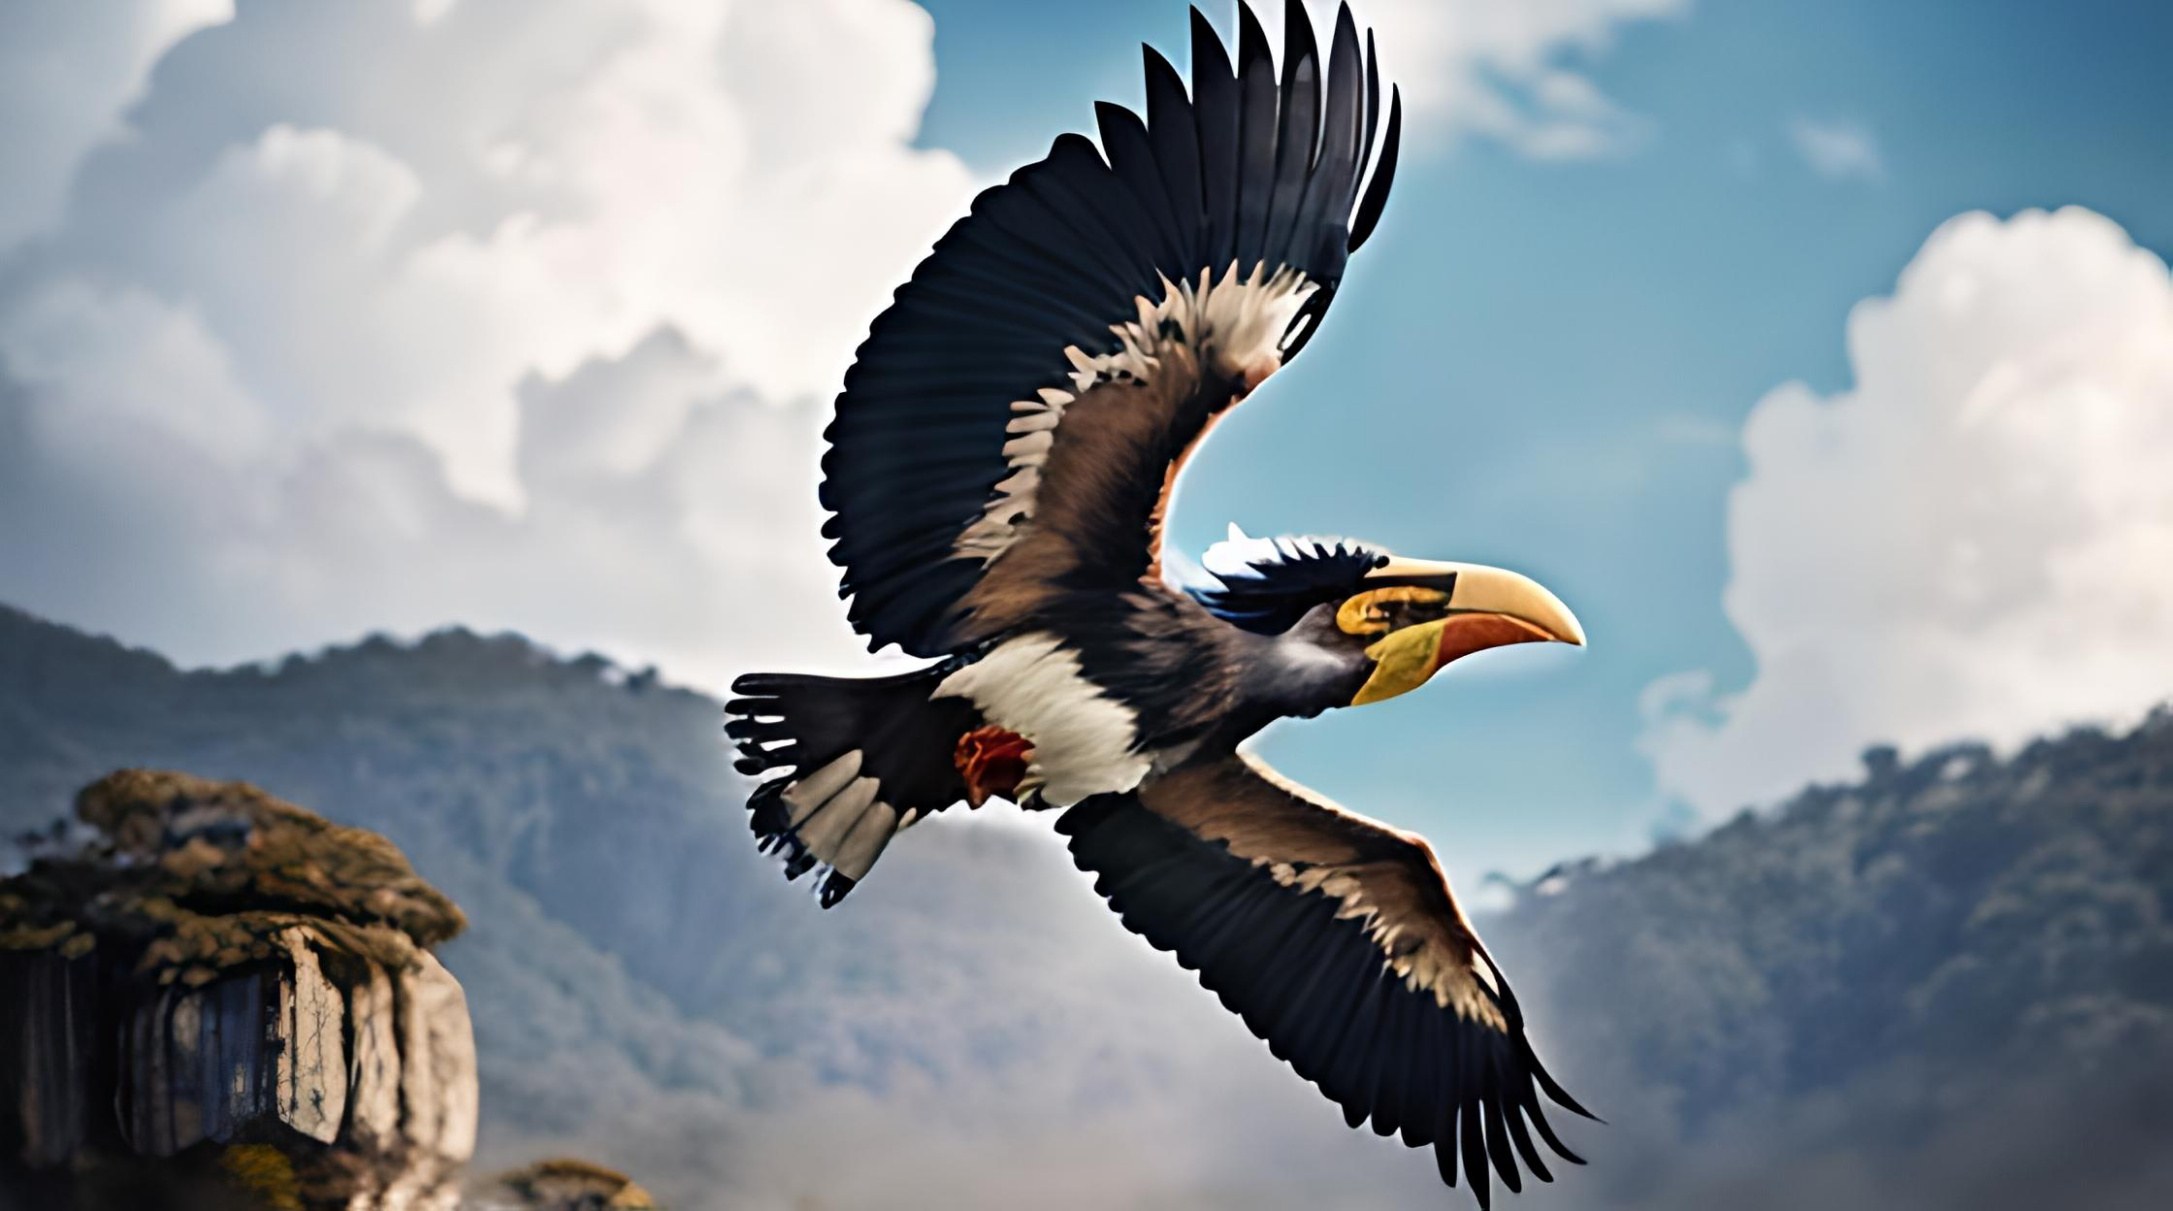 Kusa Kap은 날개 길이가 약 16~22피트인 거대한 새로 날개에서 증기 기관 같은 소리가 납니다. 마이 쿠사 강 주변에 산다. MRU.INK